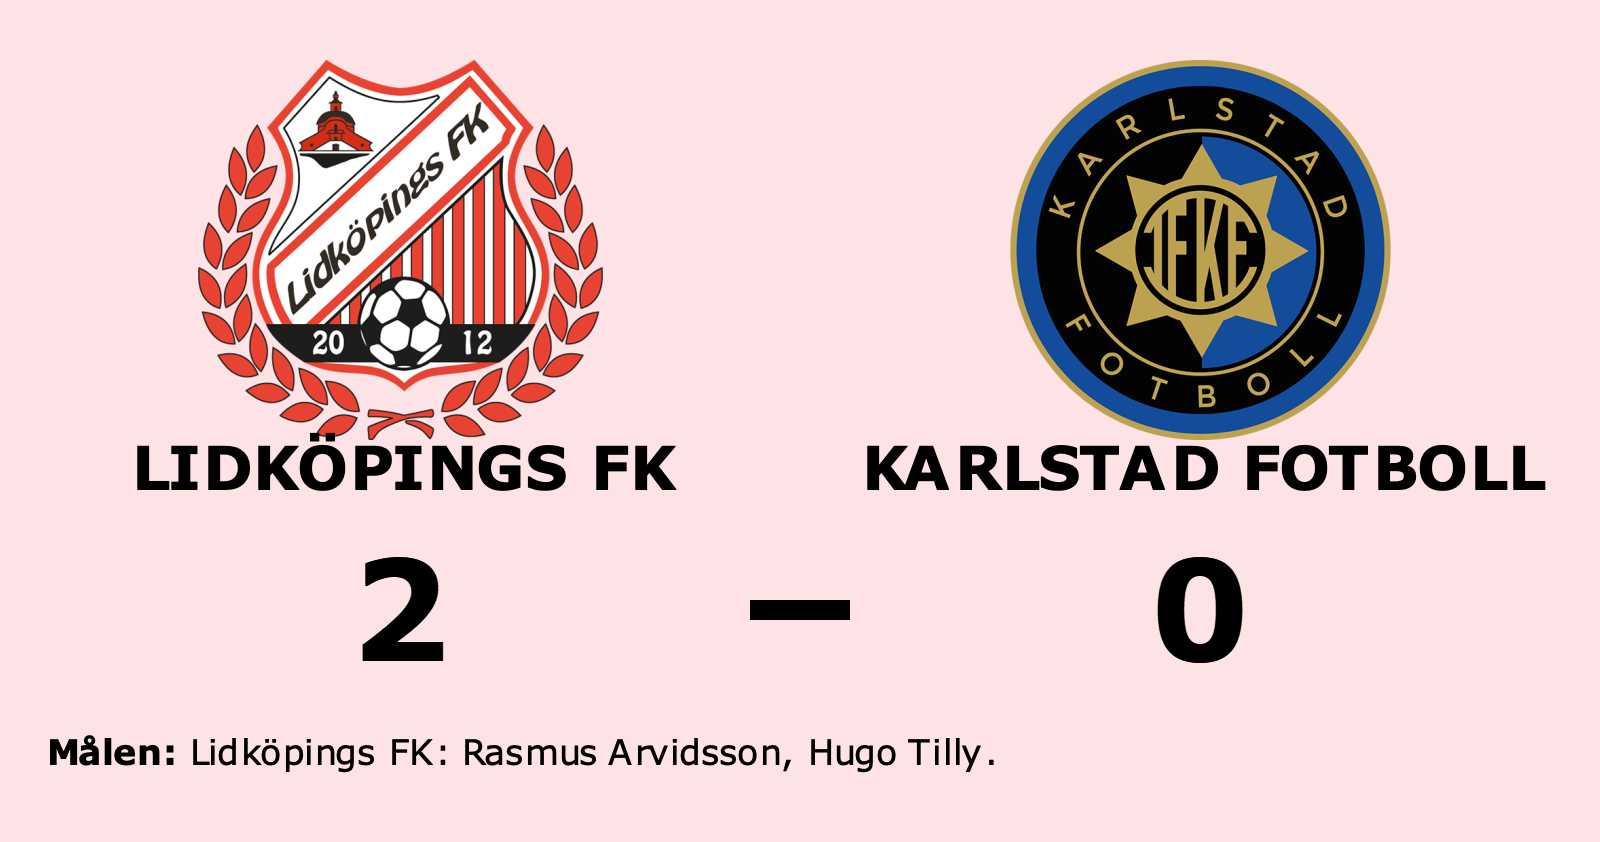 Karlstad Fotboll föll borta mot Lidköpings FK